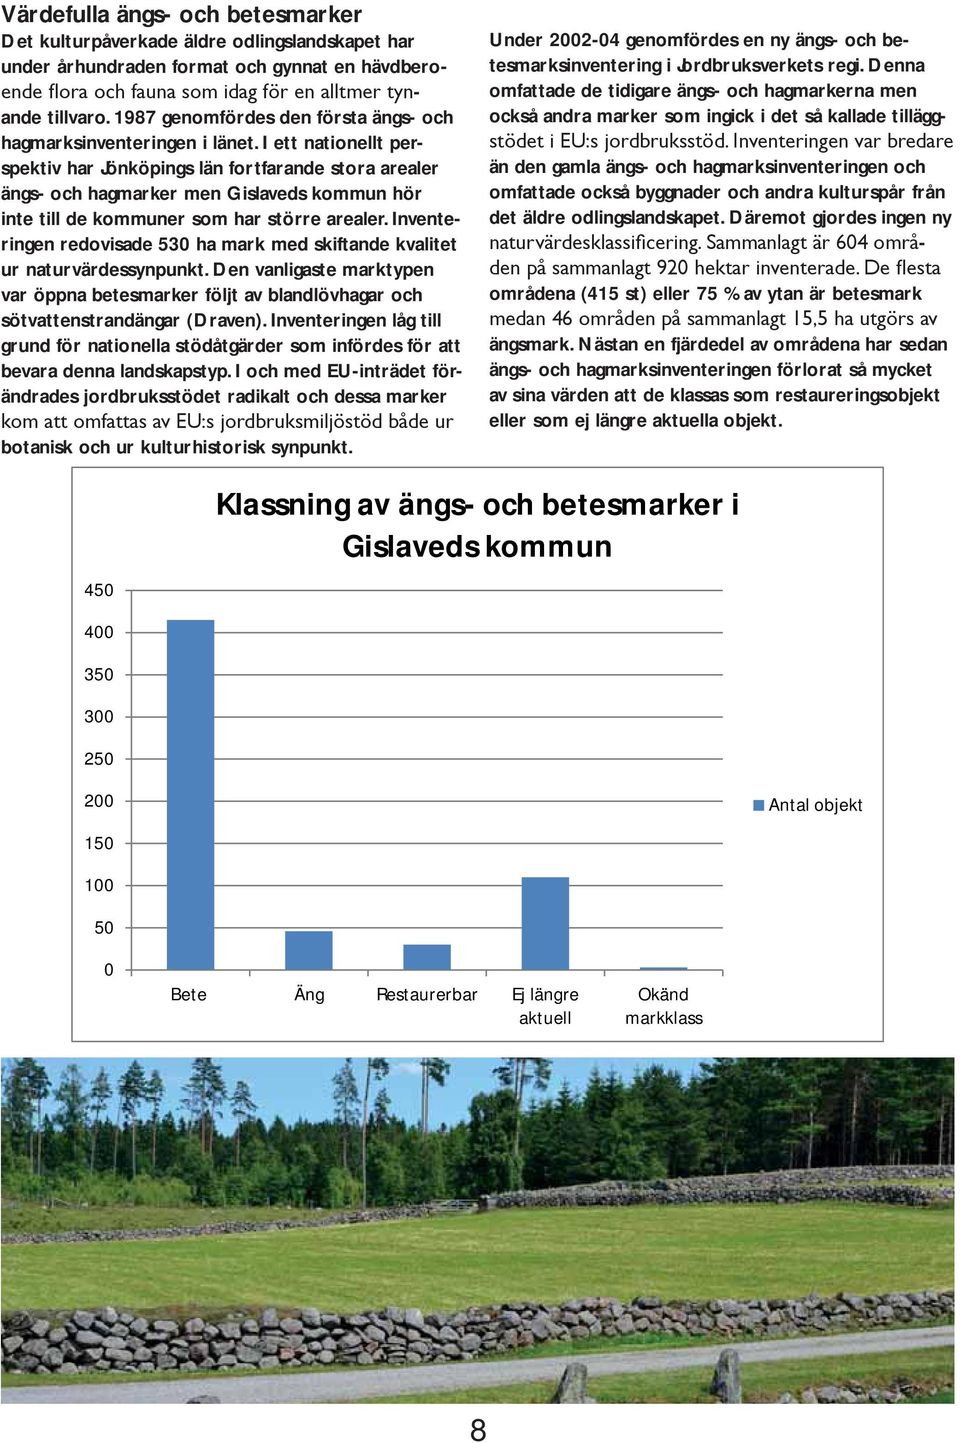 I ett nationellt perspektiv har Jönköpings län fortfarande stora arealer ängs- och hagmarker men Gislaveds kommun hör inte till de kommuner som har större arealer.